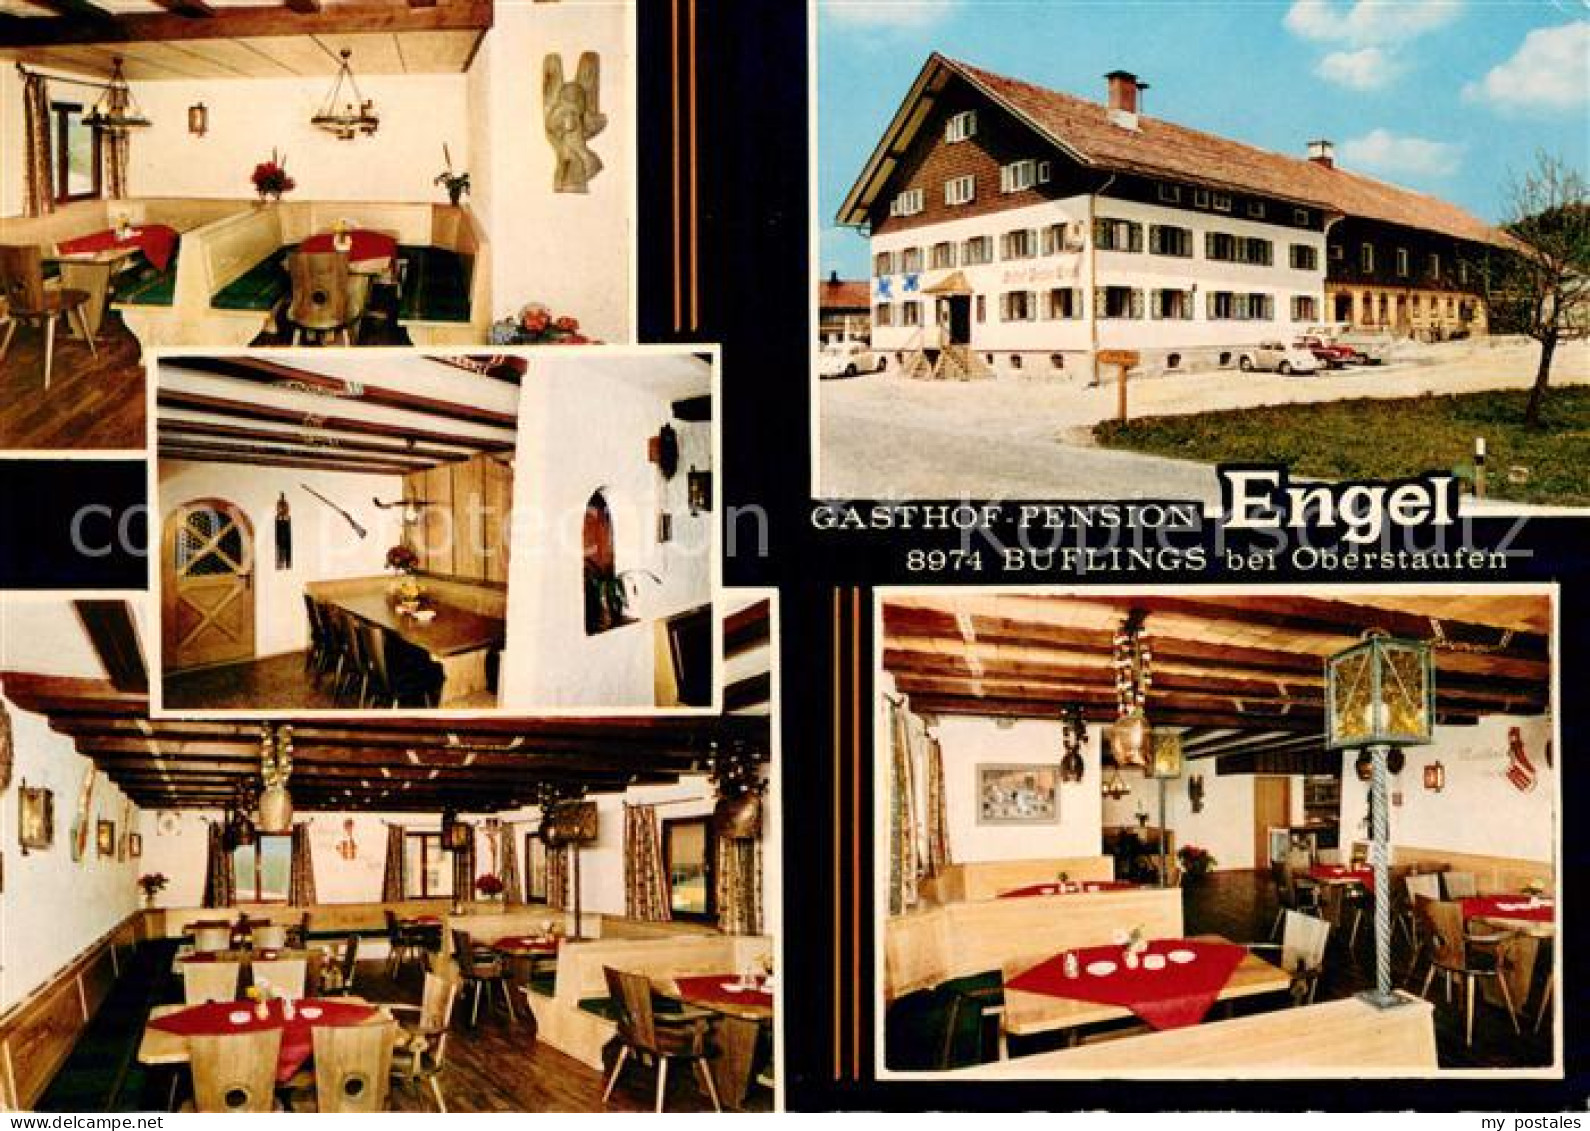 73653329 Buflings Gasthof Pension Engel Gastraeume Buflings - Oberstaufen